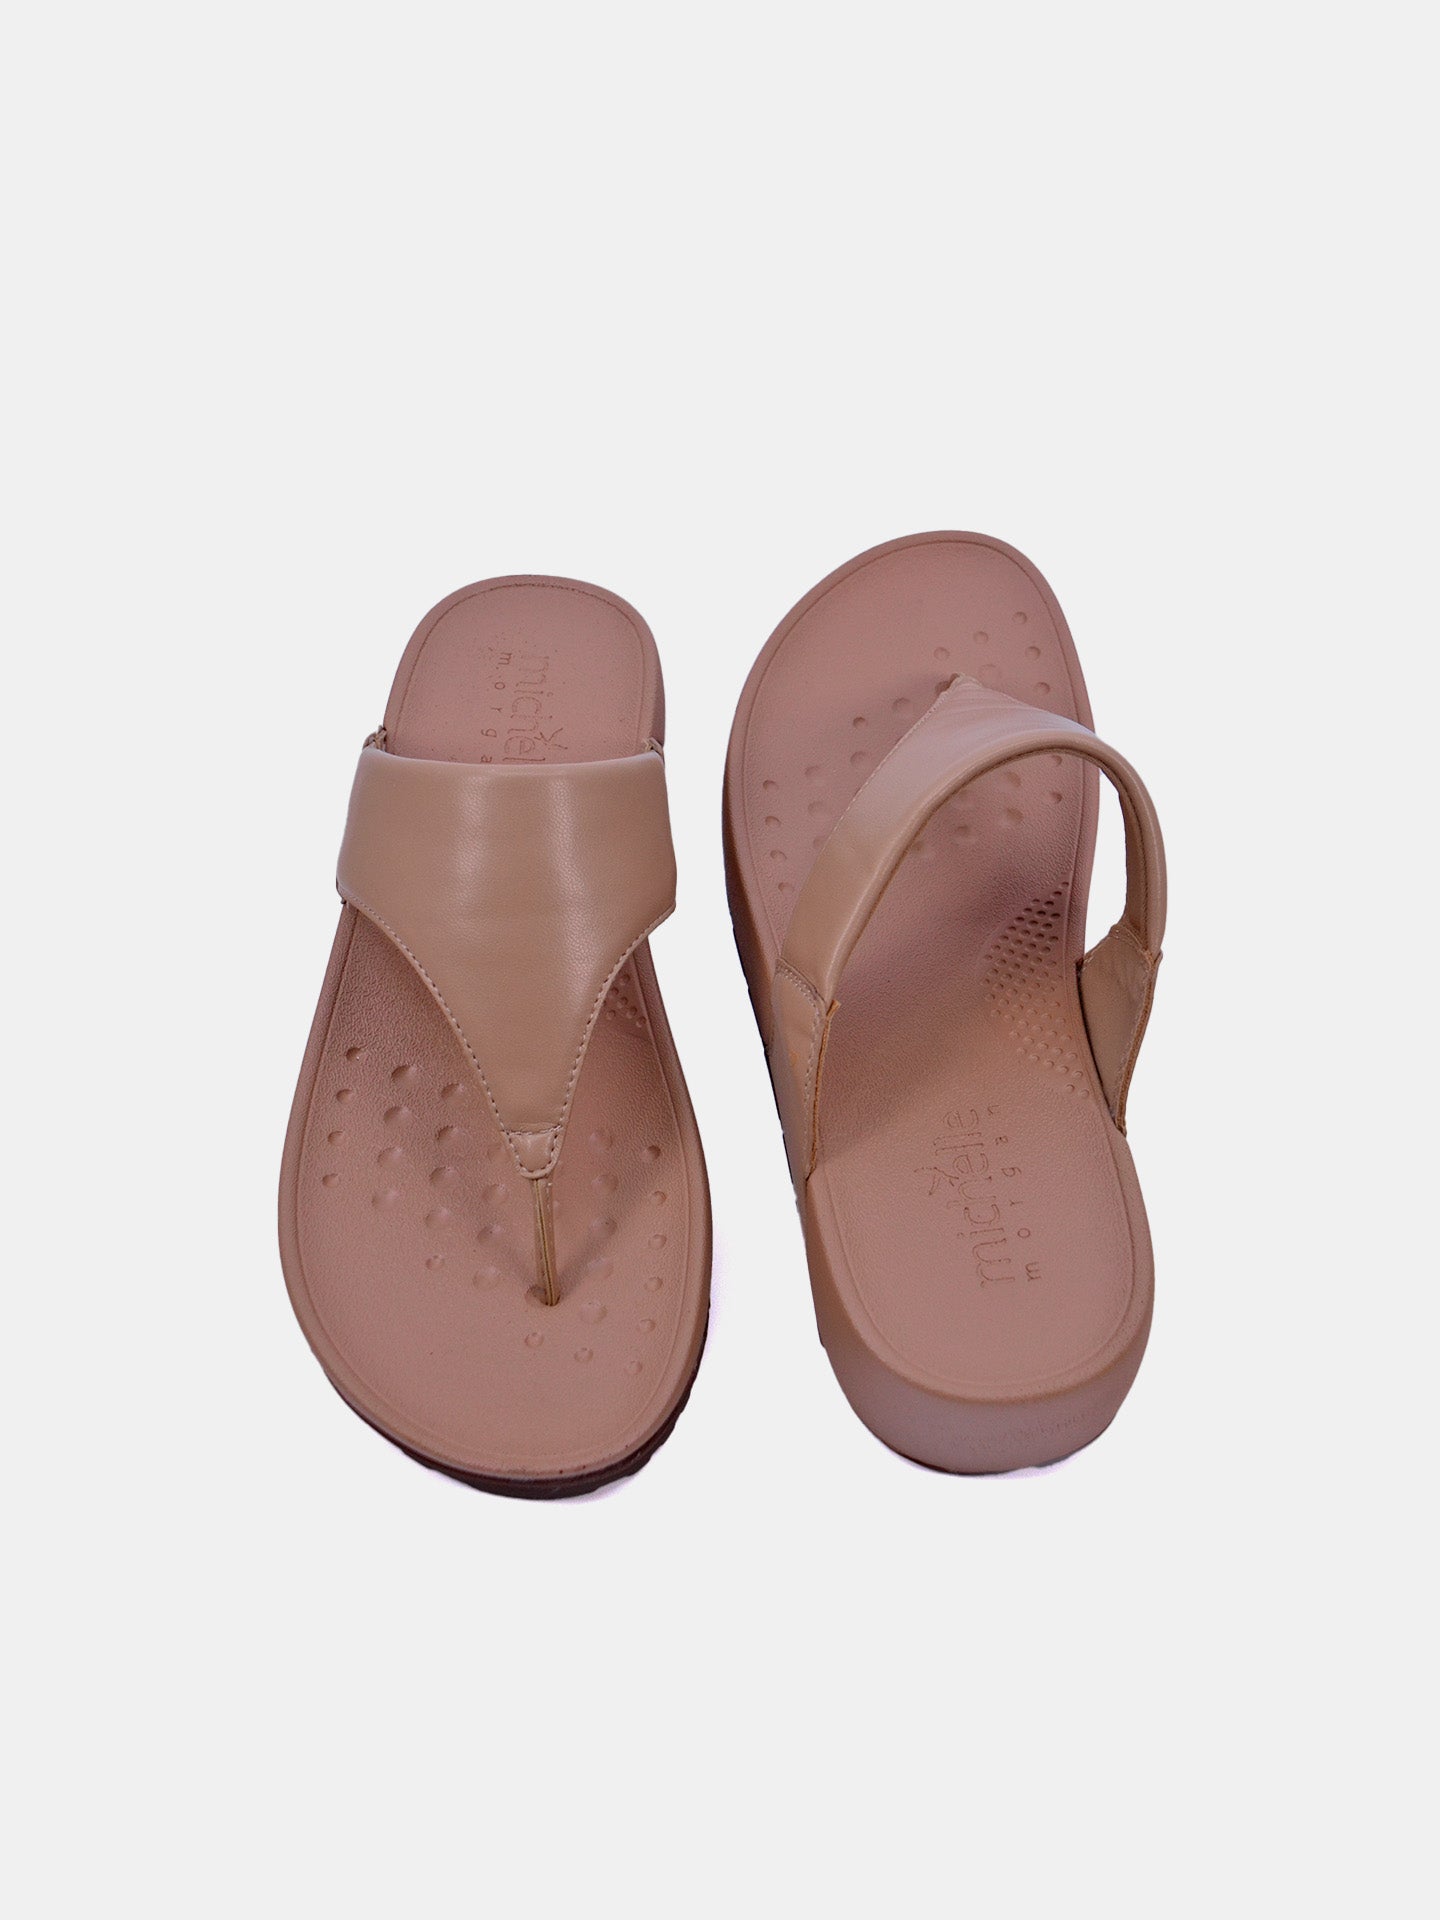 Michelle Morgan 214RJ876 Women's Sandals #color_Beige